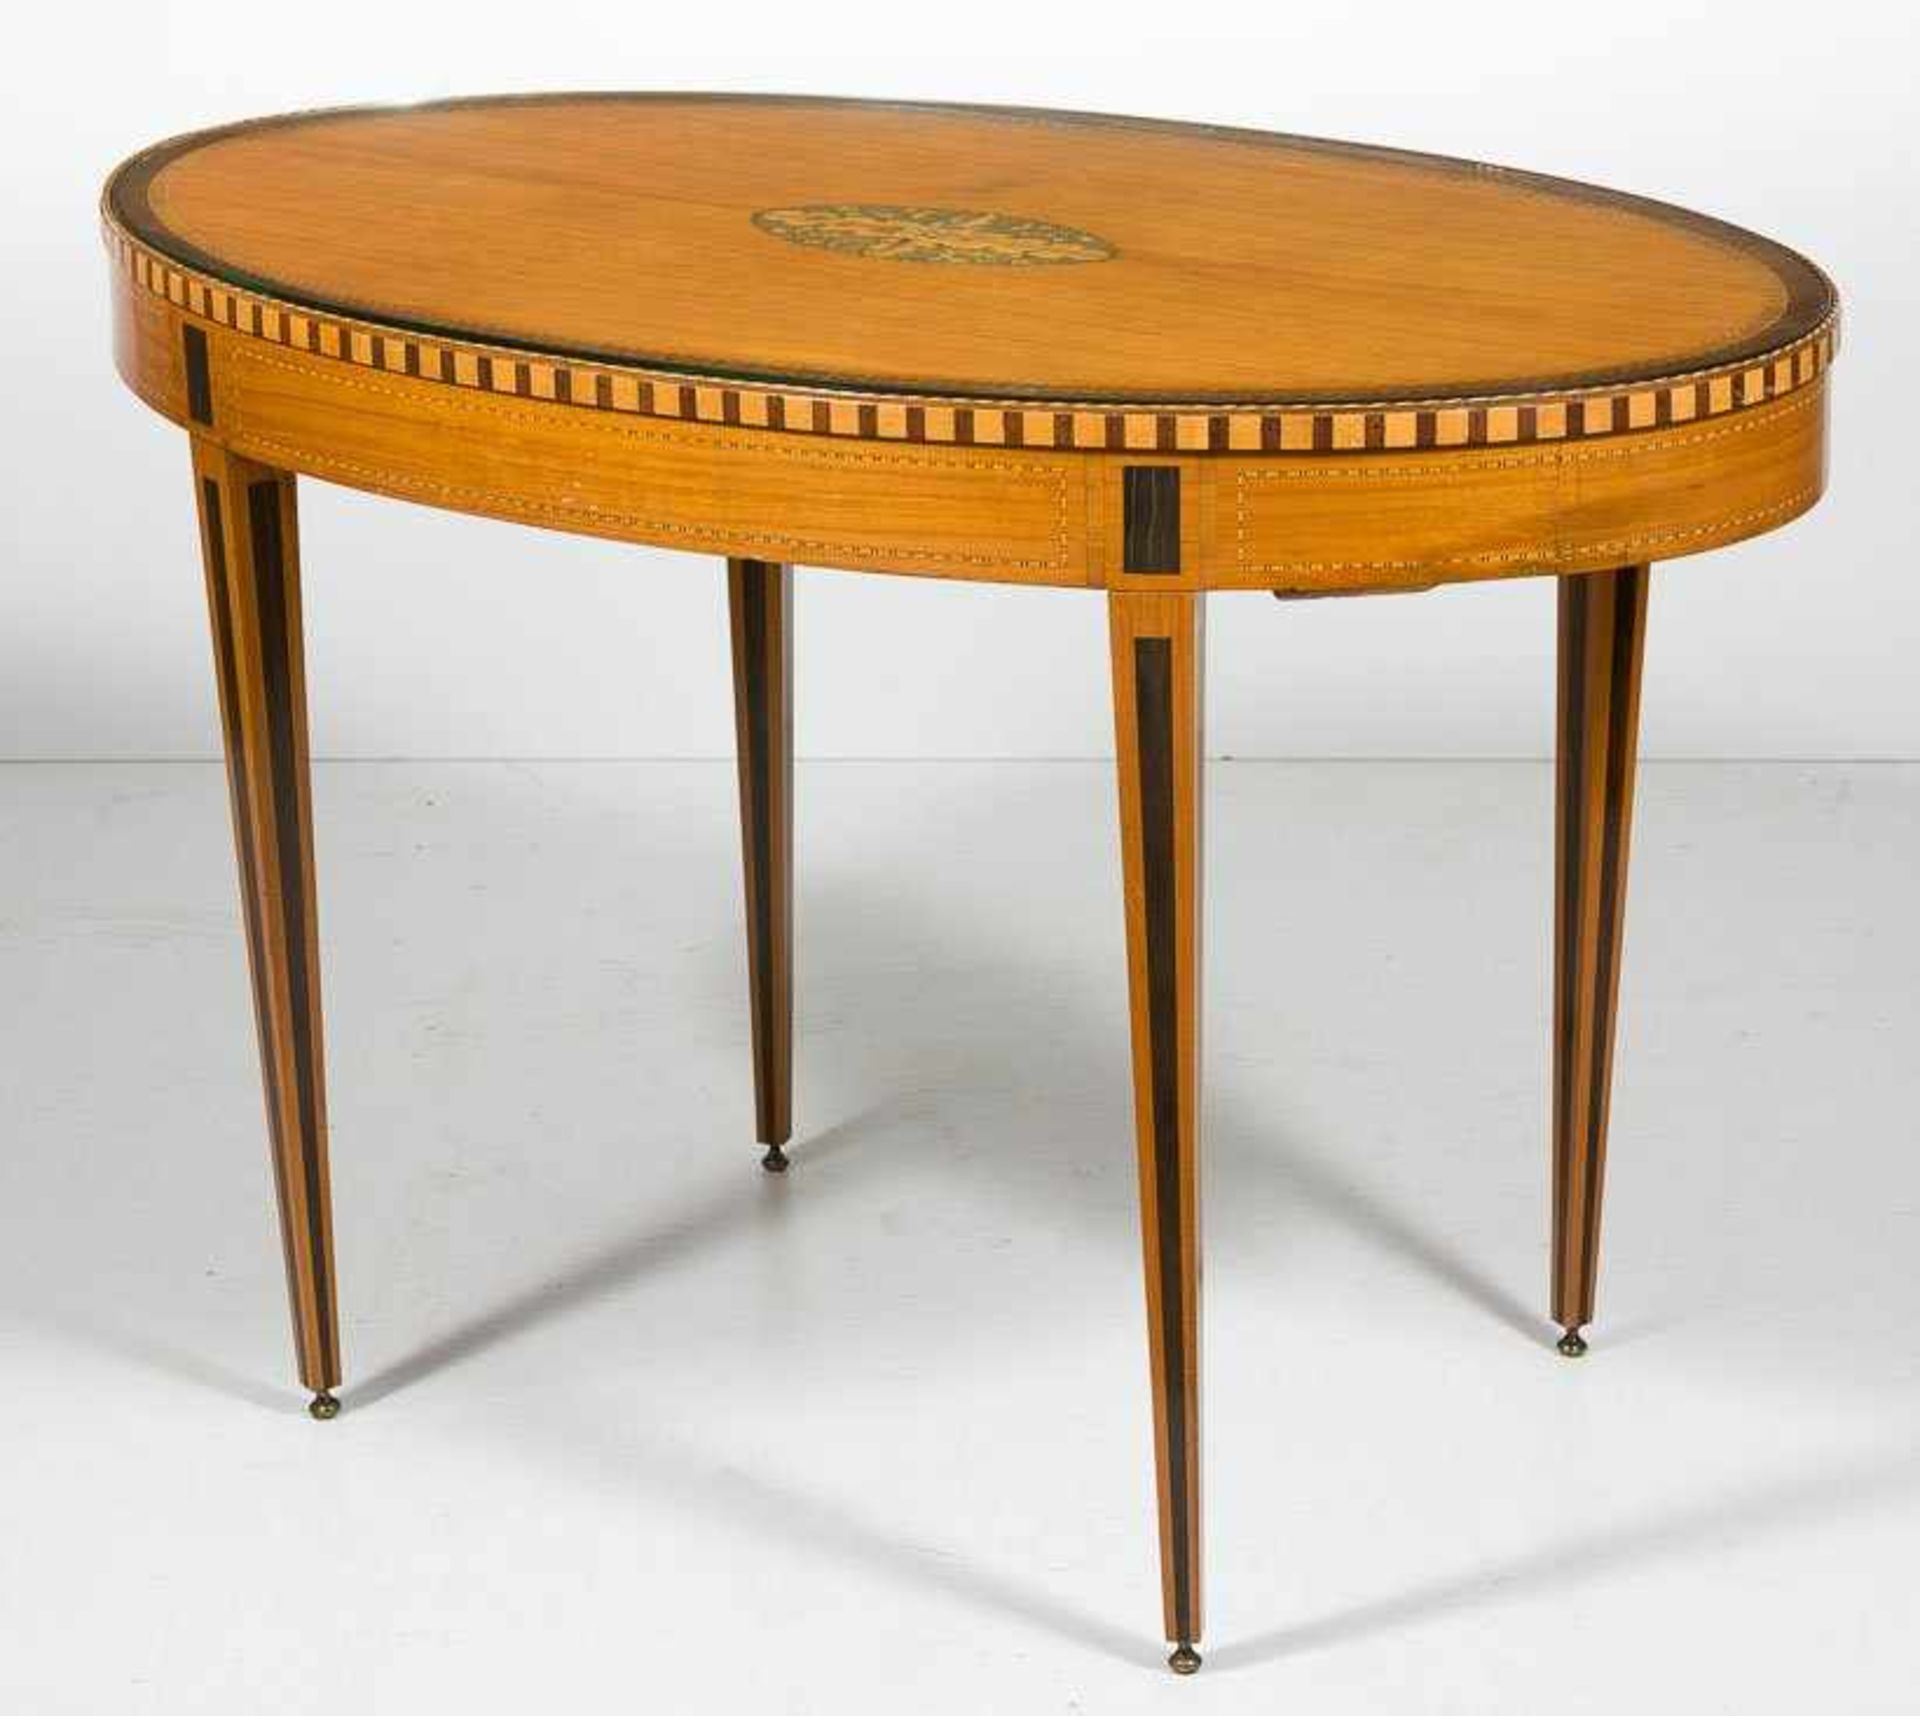 Ovaler Tisch im Sheraton-Stil. Satinholz und div. Einlagehölzer, gefriest und gefeldert. In der